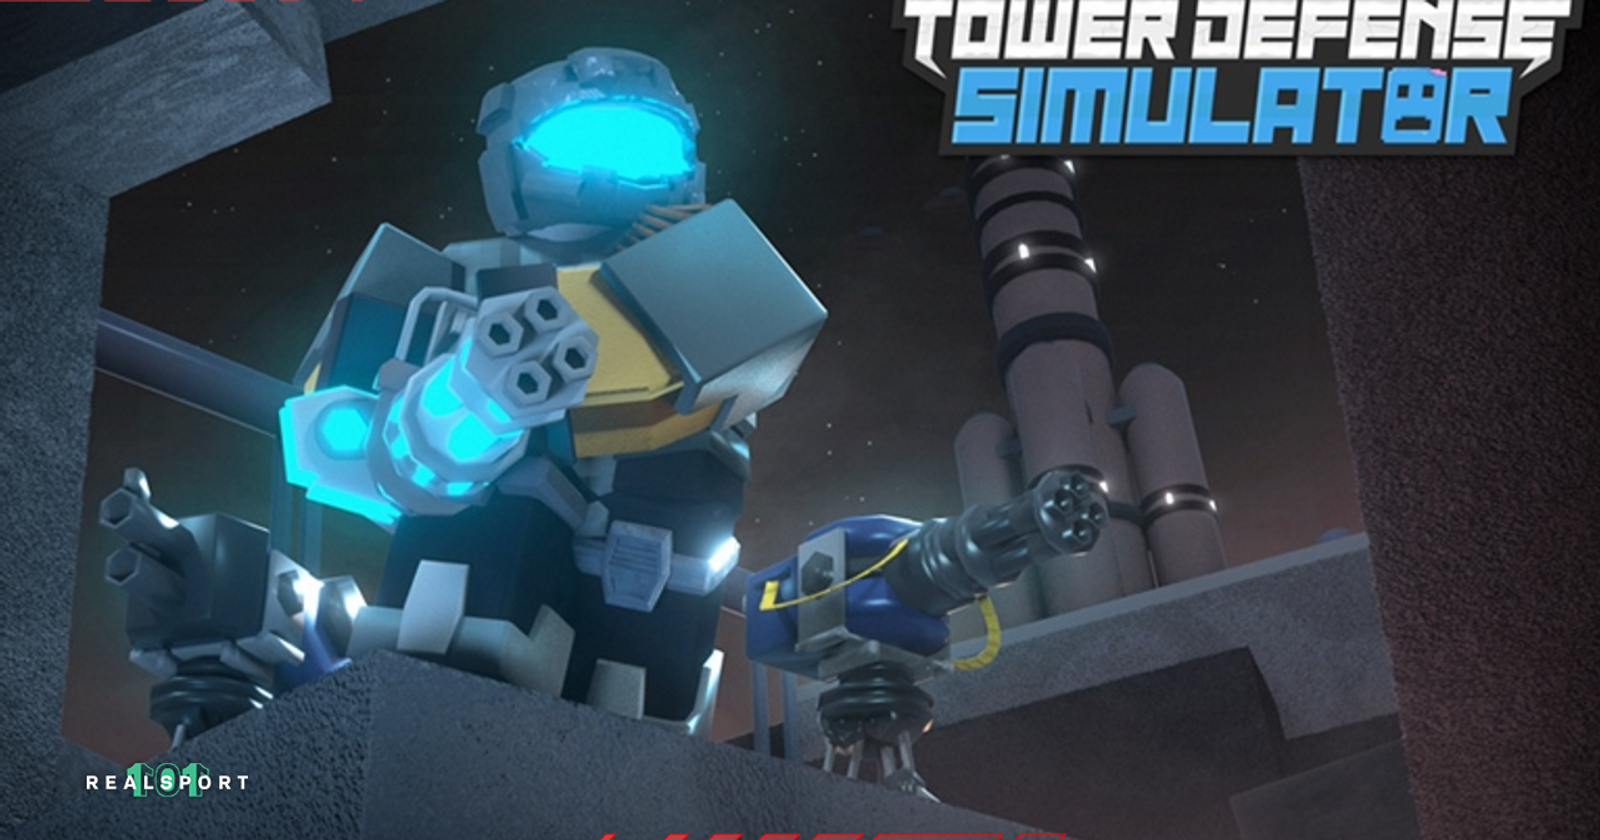 Tower Defense Simulator Codes (November 2021) - Game News 24